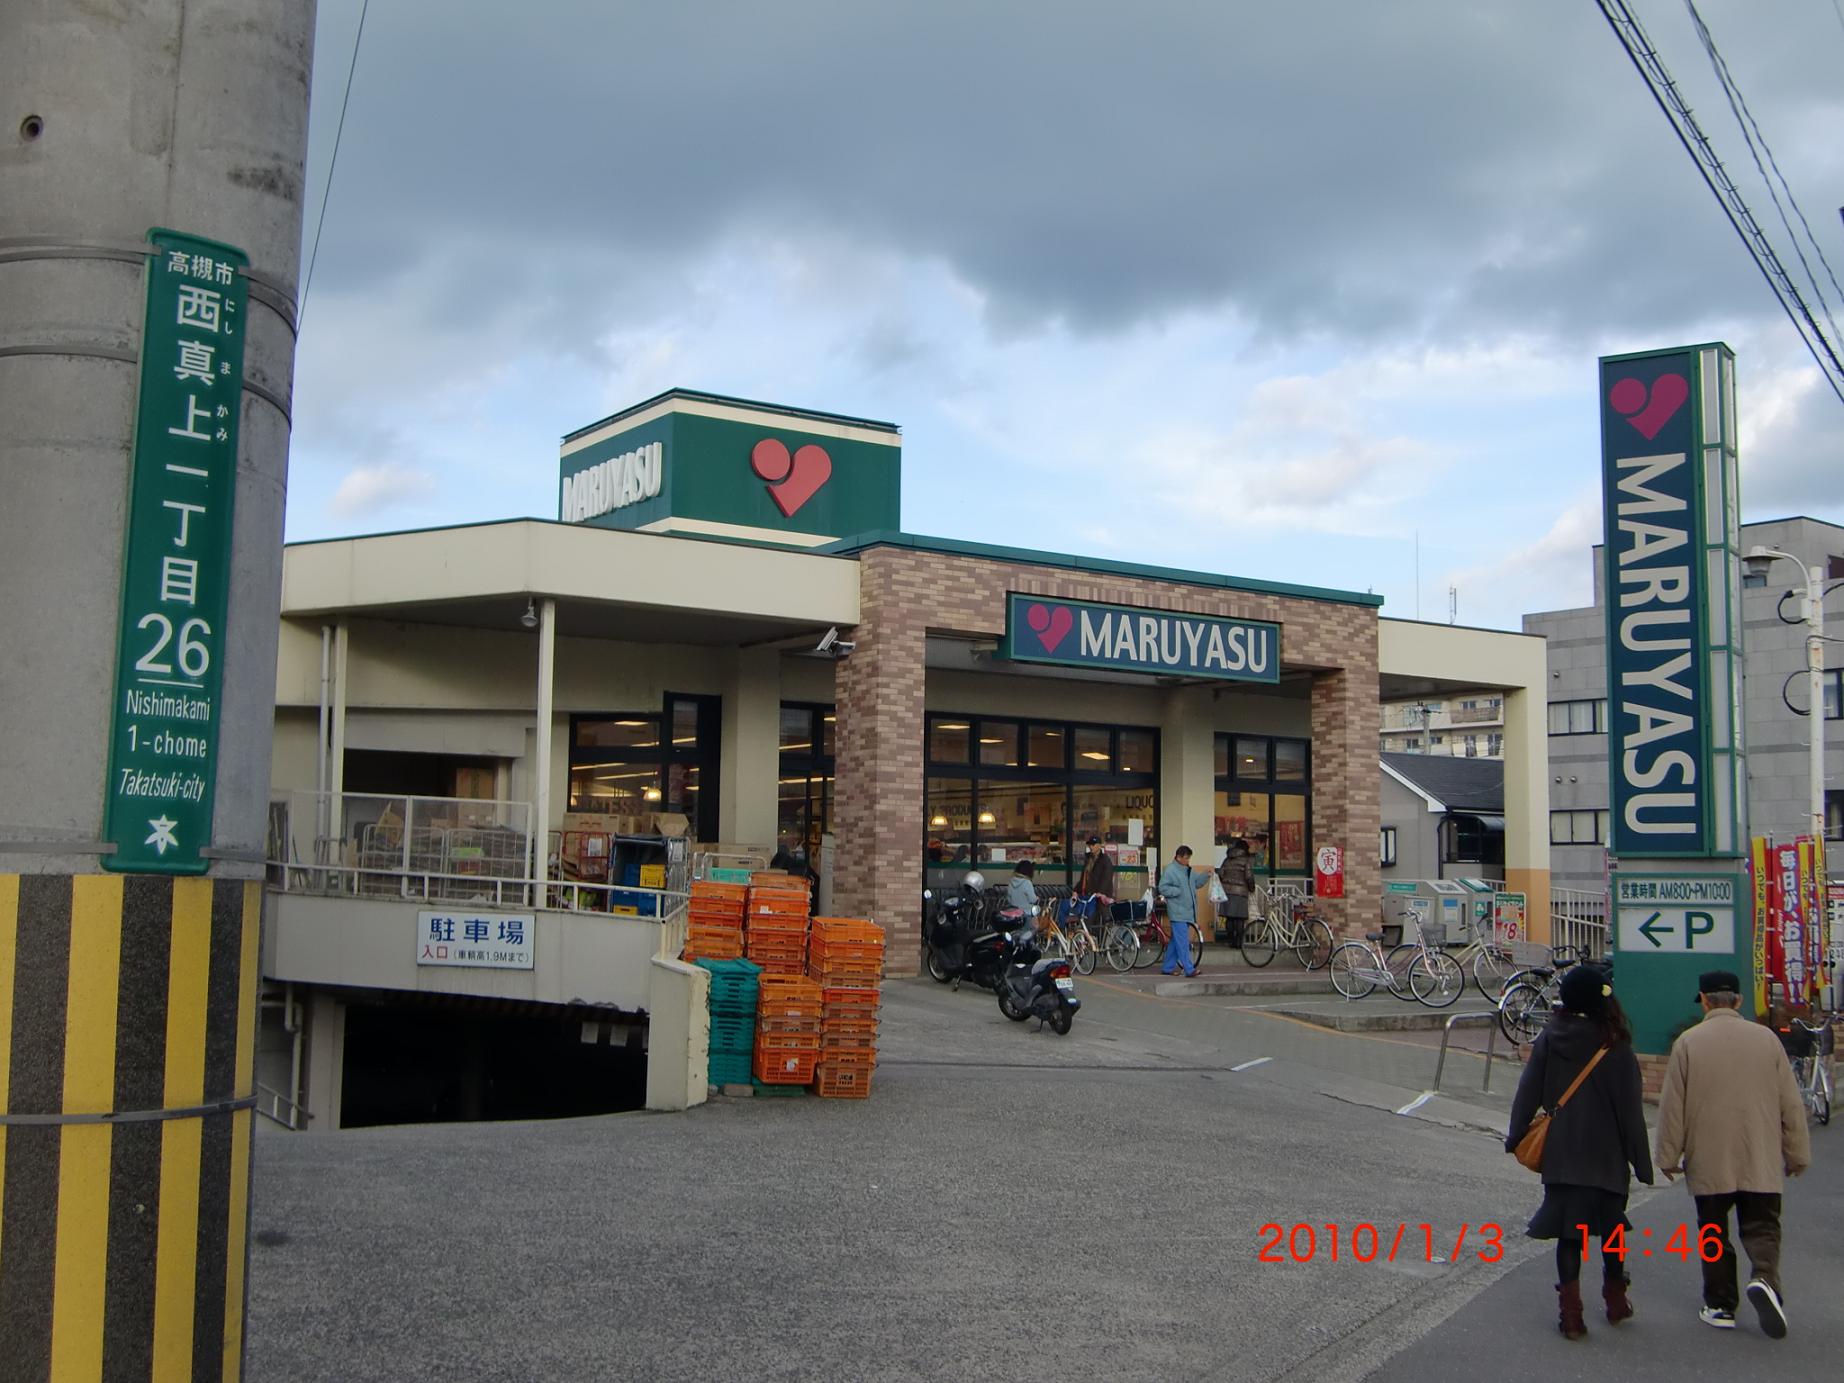 Supermarket. 234m to Super Maruyasu just above store (Super)